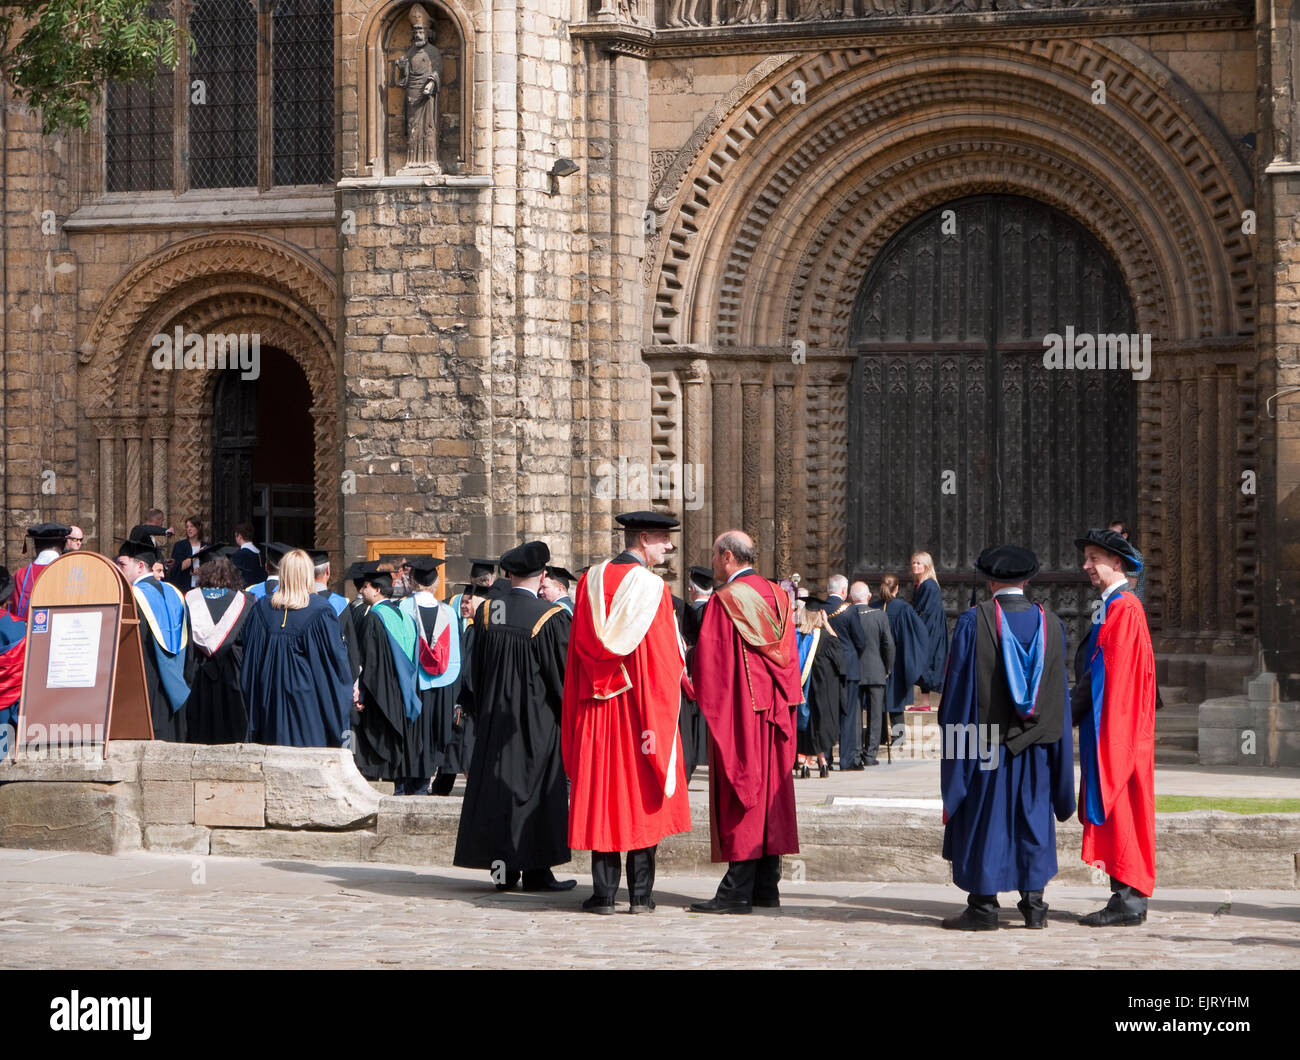 Abschlussfeier der Universität vor der Kathedrale von Lincoln, Lincolnshire, England Stockfoto